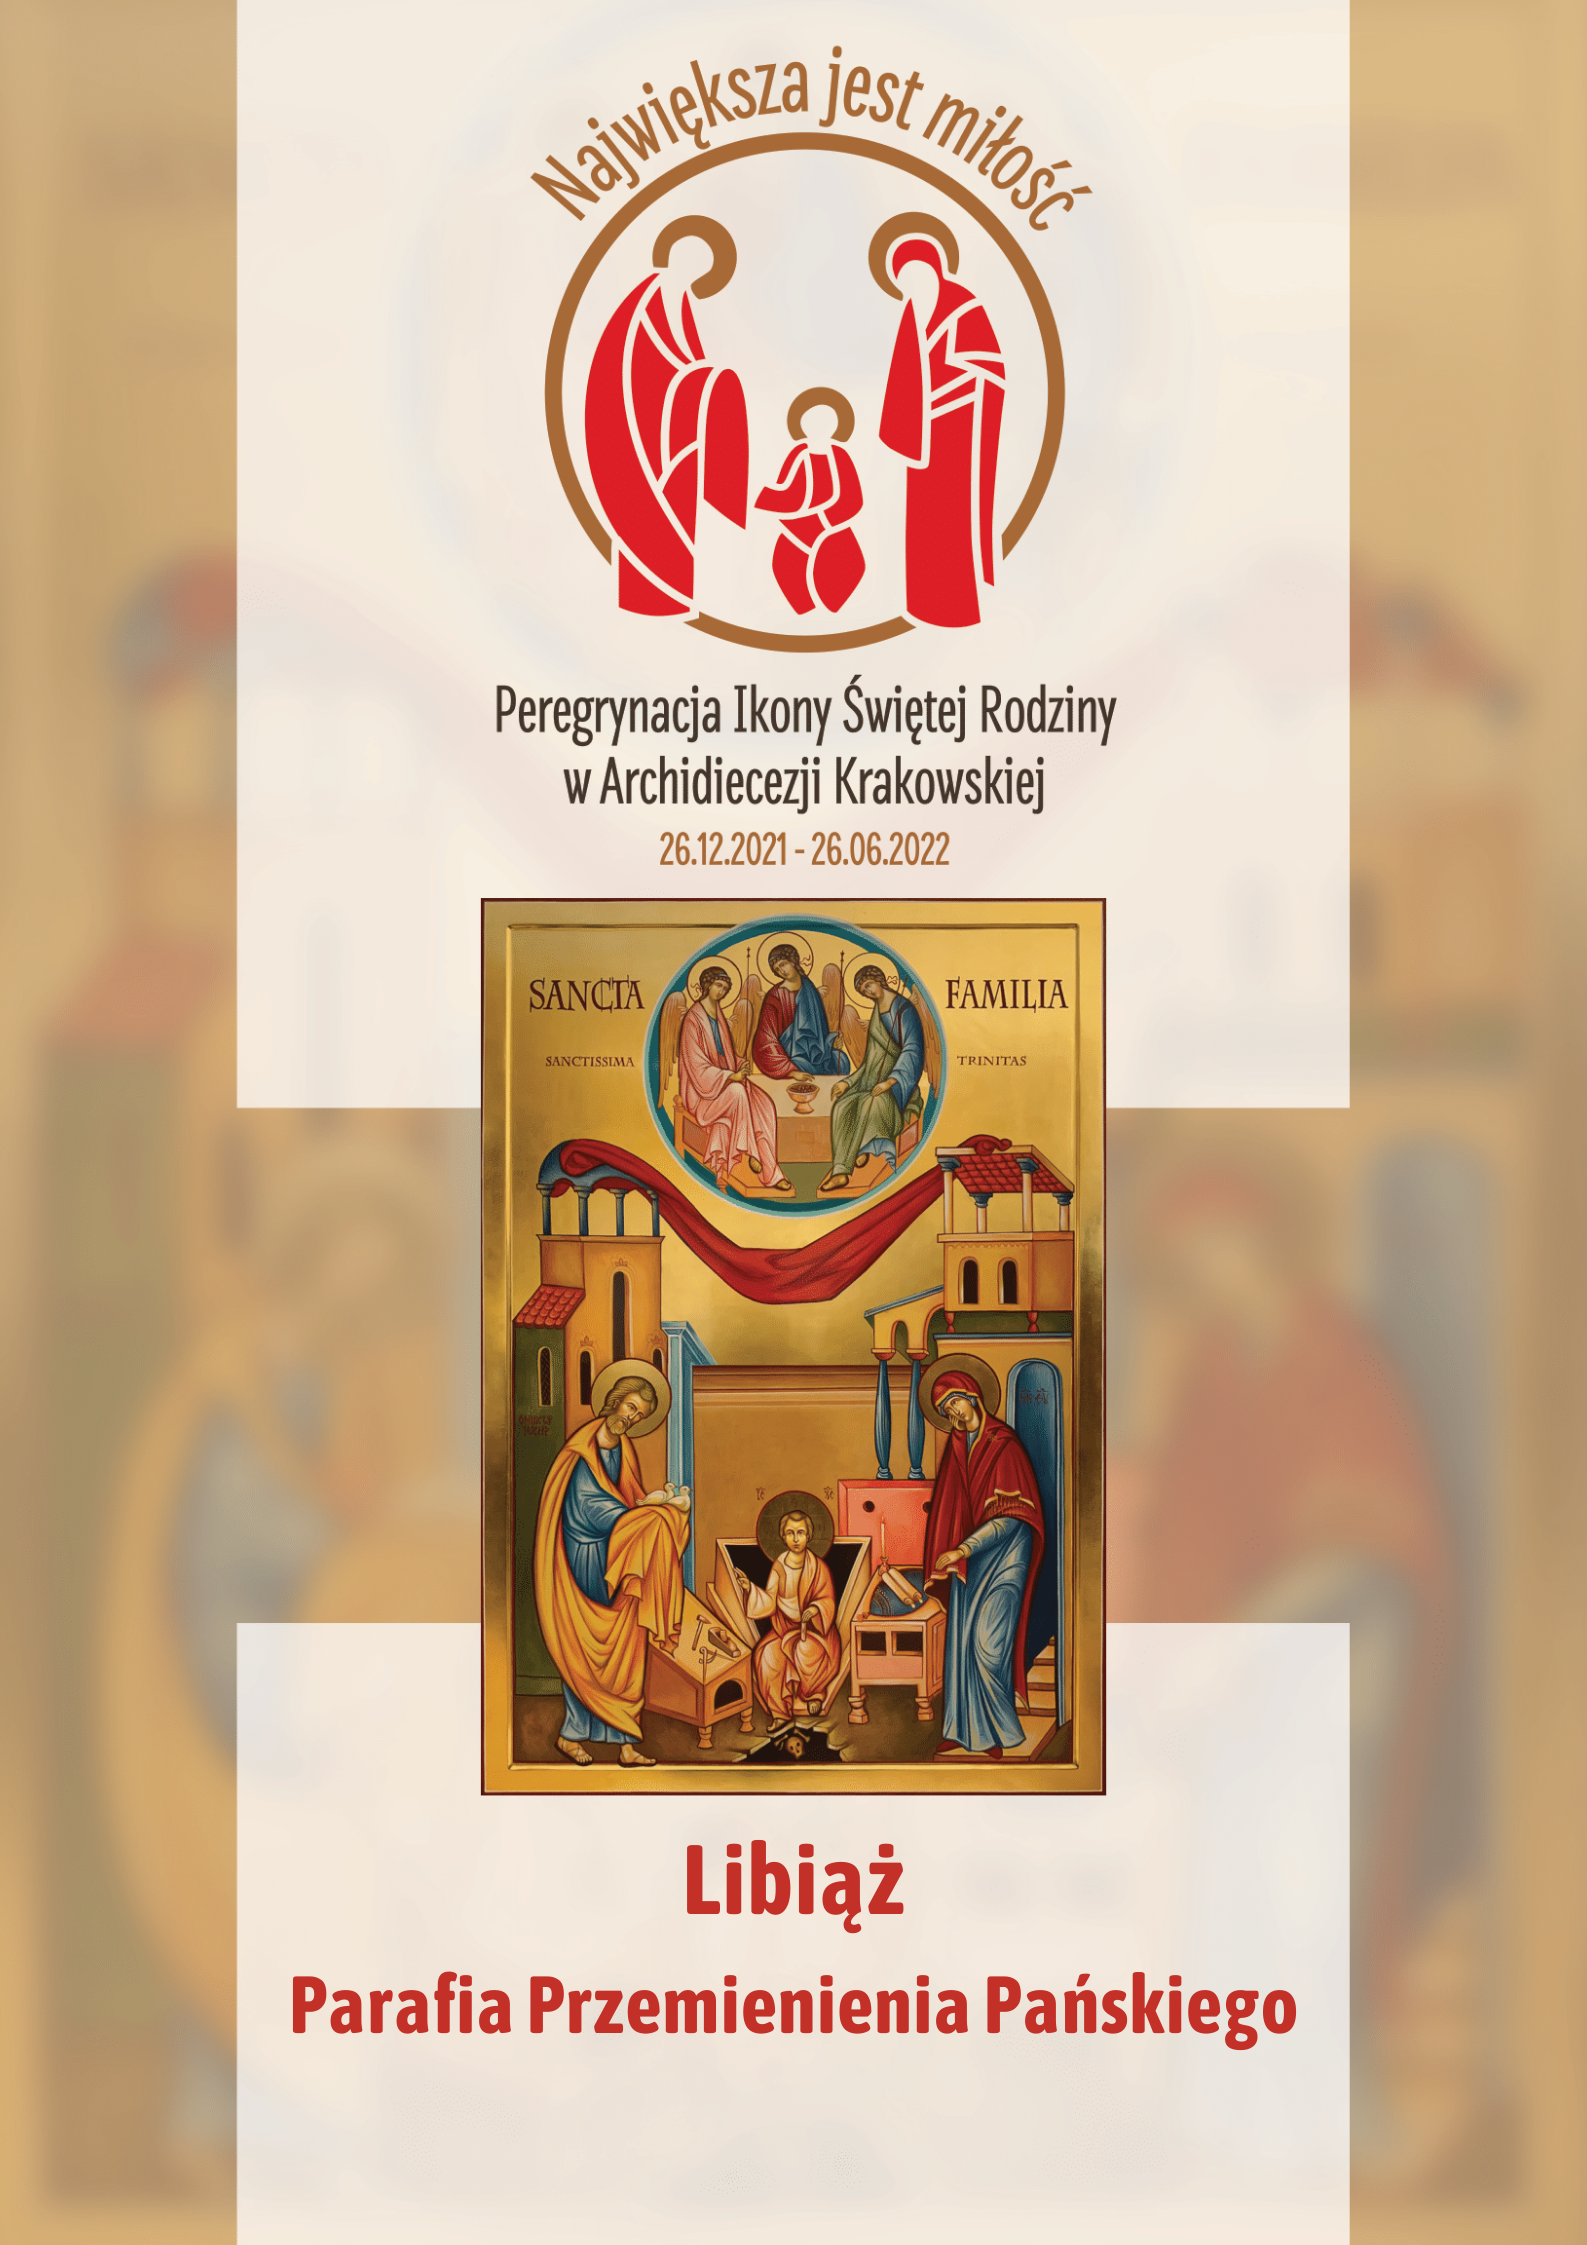 Ikona Świętej Rodziny w parafii Przemienienia Pańskiego w Libiążu